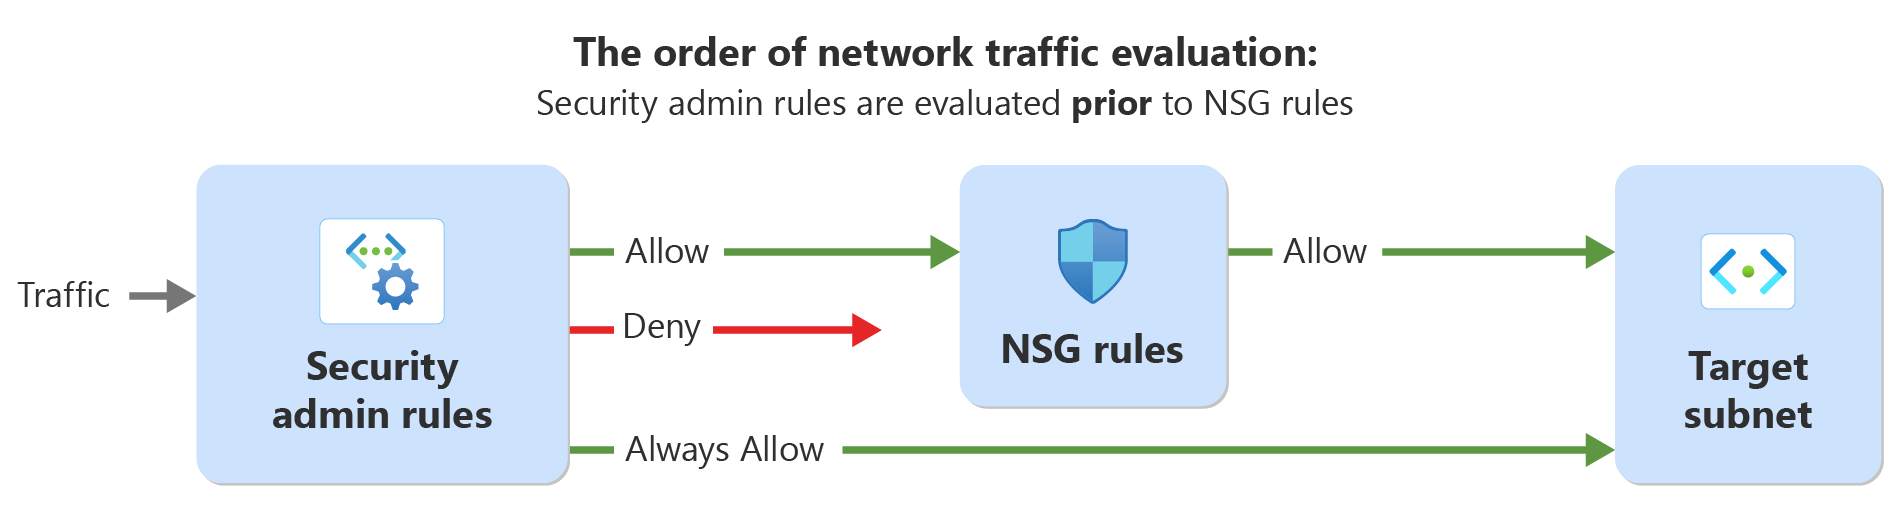 Diagram met de volgorde van evaluatie voor netwerkverkeer met beveiligingsbeheerdersregels en netwerkbeveiligingsregels.